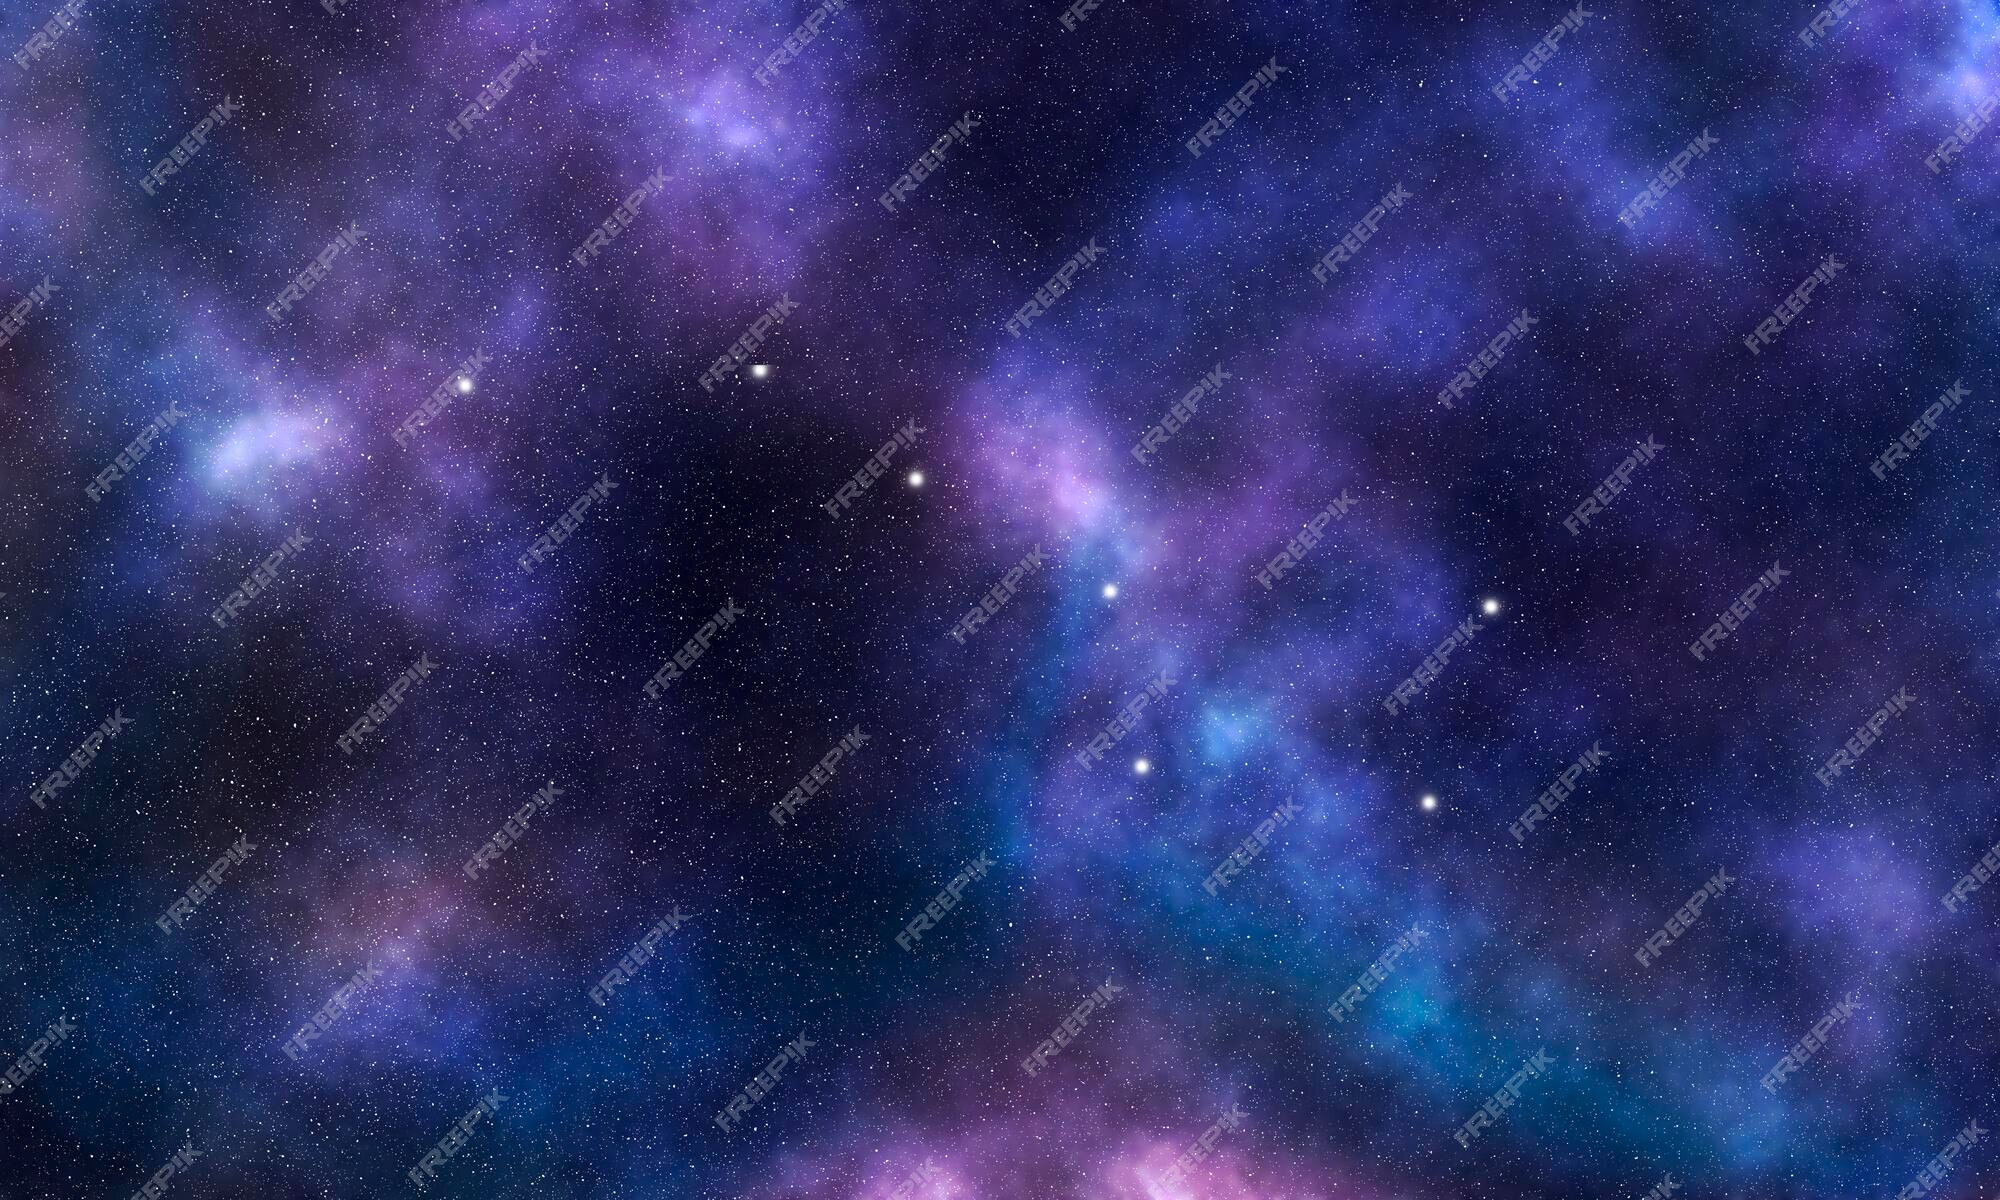 Chòm sao Ursa Major có một vẻ đẹp đầy ma thuật và huyền bí. Hãy cùng khám phá các vì sao và tìm hiểu về lịch sử và ý nghĩa của 12 chòm sao để hiểu thêm về vũ trụ và cảm nhận sự vĩnh cửu của thời gian.